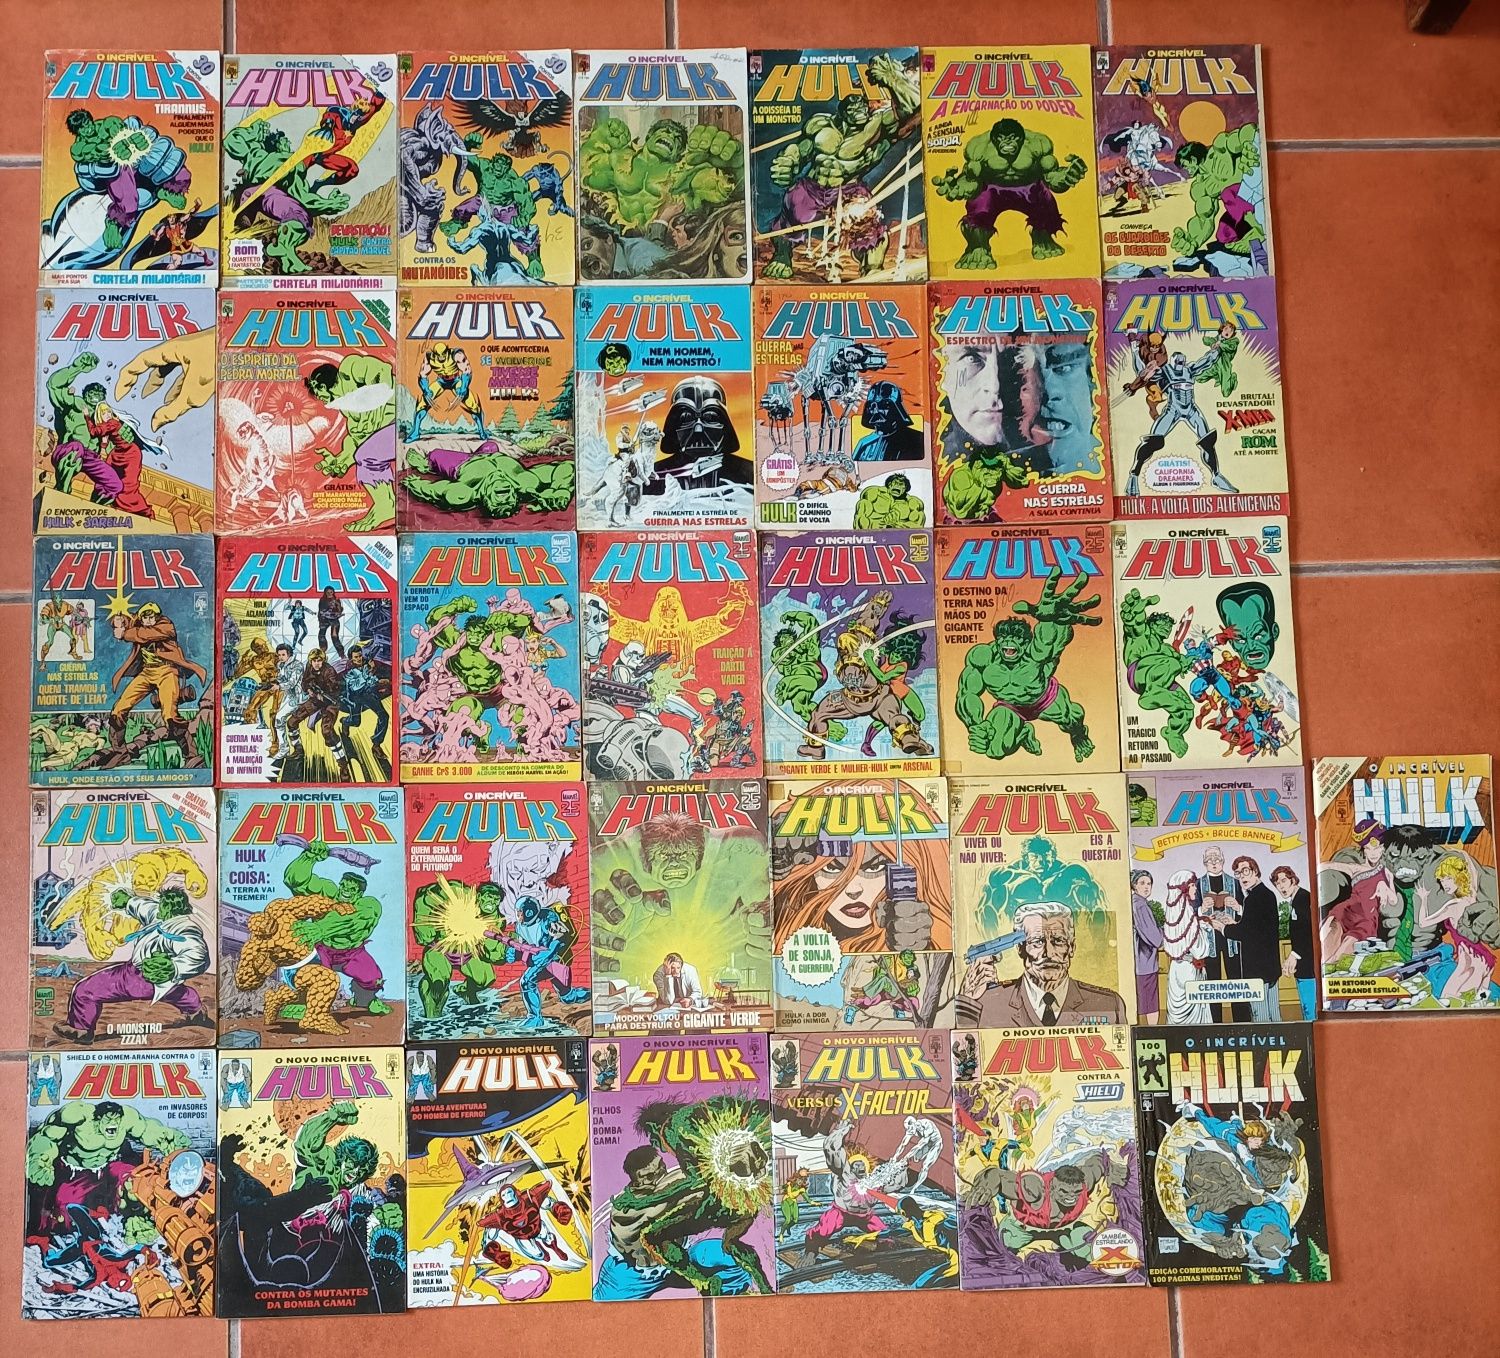 31 Livros de Hulk da Abril